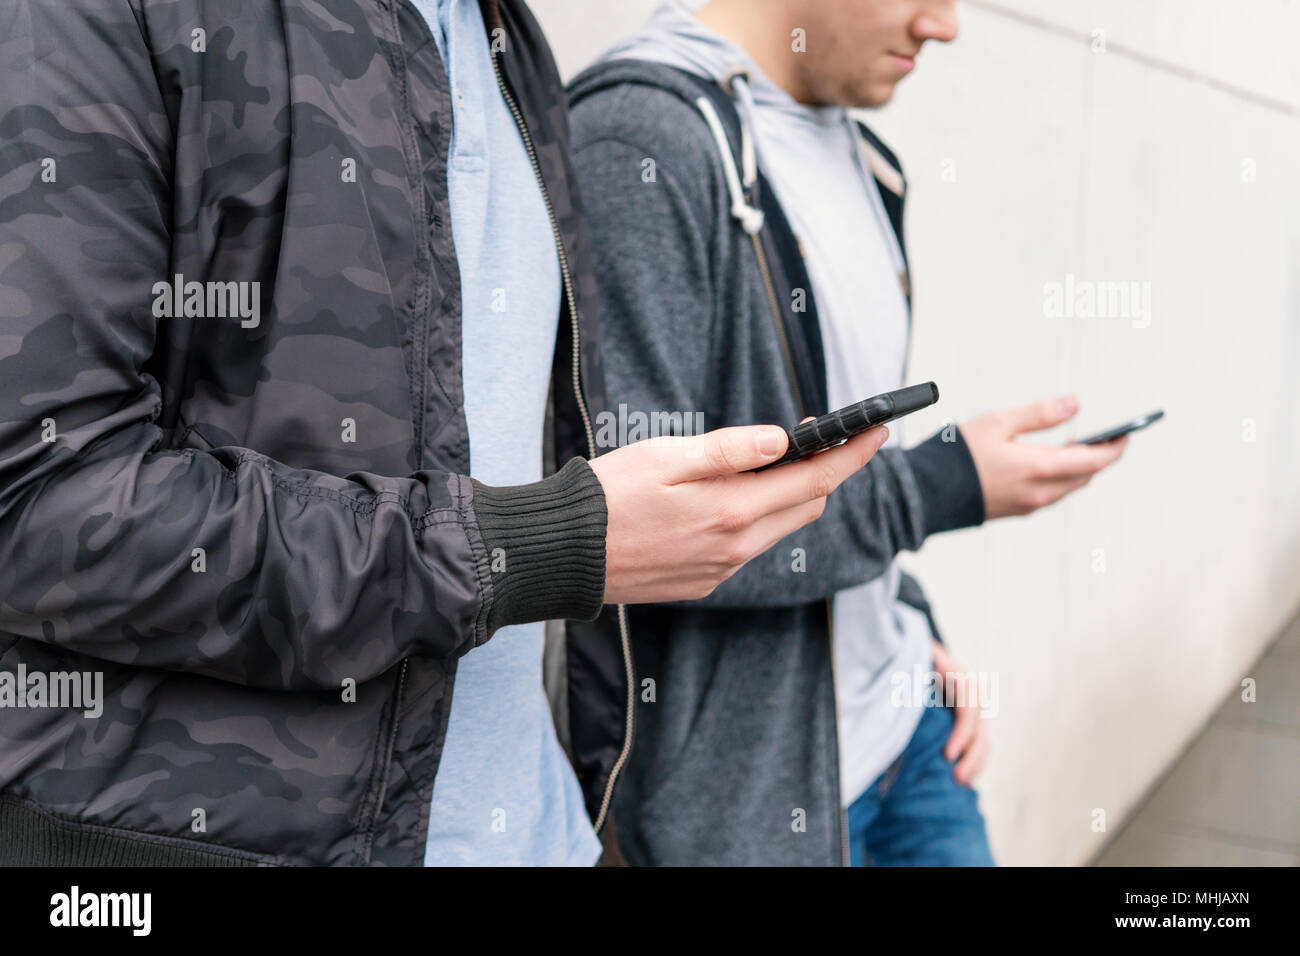 Zwei antisoziale Handy süchtig männliche Jugendliche mit Smartphone, Technik Konzept, lehnte sich gegen die Wand mit Kopie Raum Stockfoto